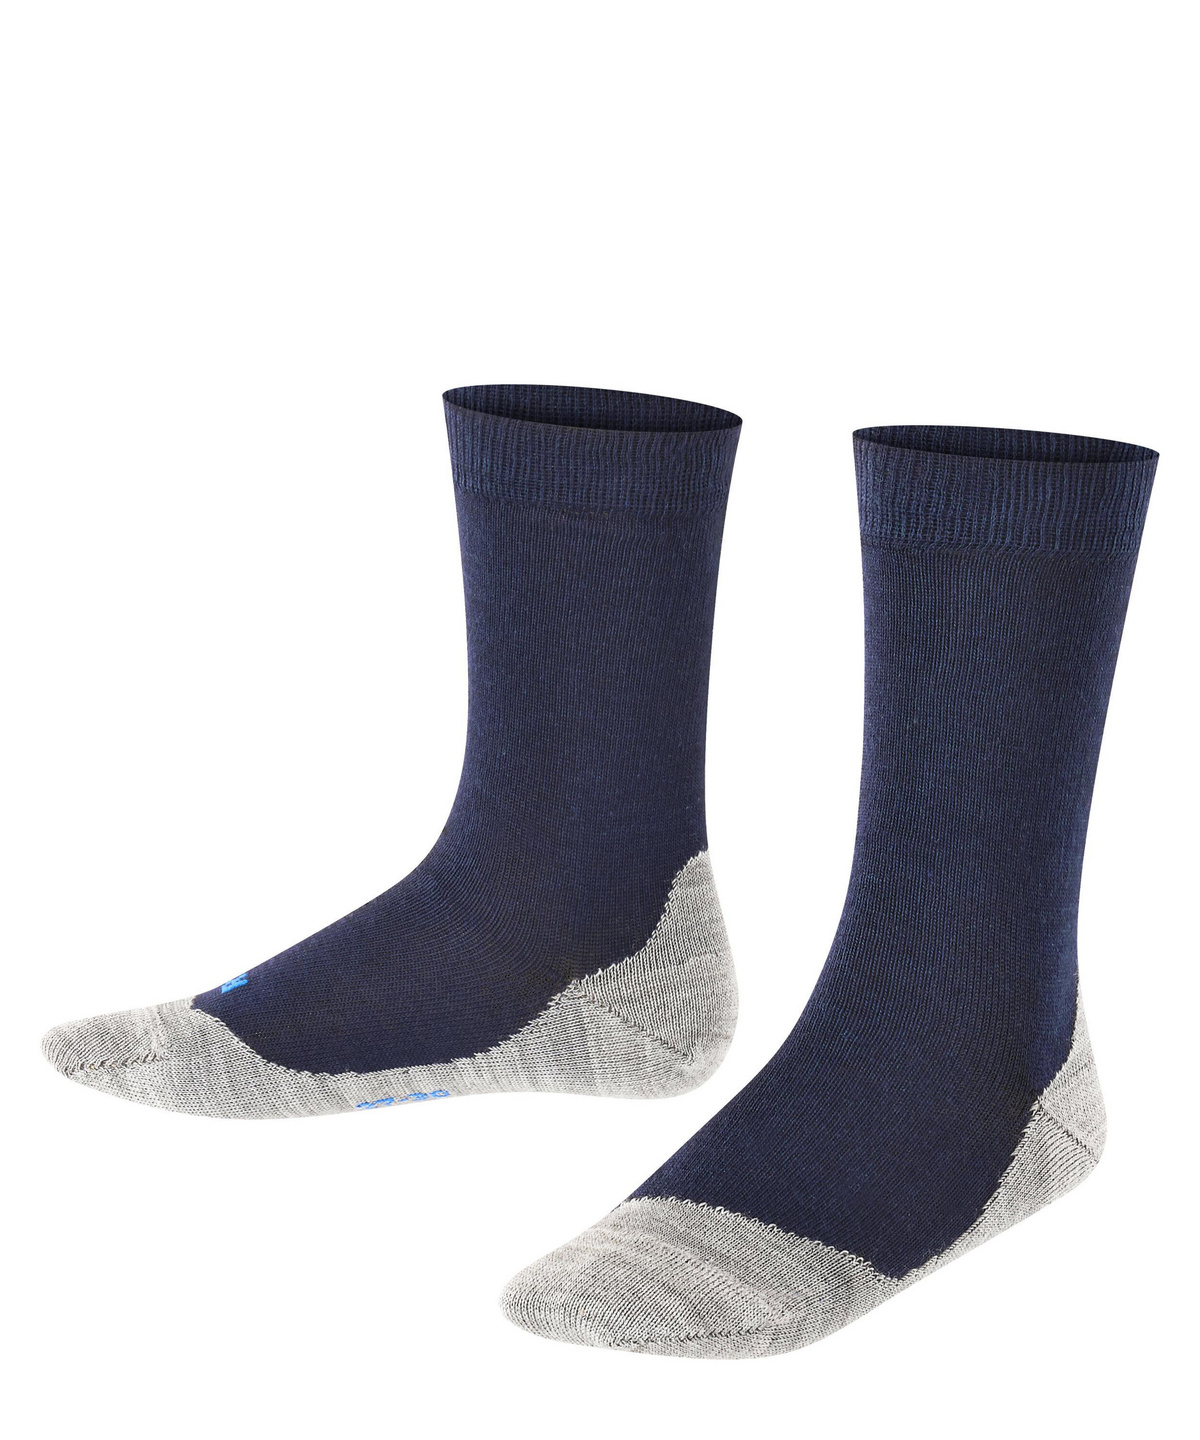 FALKE Socken Sunny Days Baumwolle Größe 19-42 Kinder schwarz blau viele weitere Farben verstärkte Kindersocken ohne Muster atmungsaktiv dünn gegen Schweiß für aktive Kinder 1 Paar 